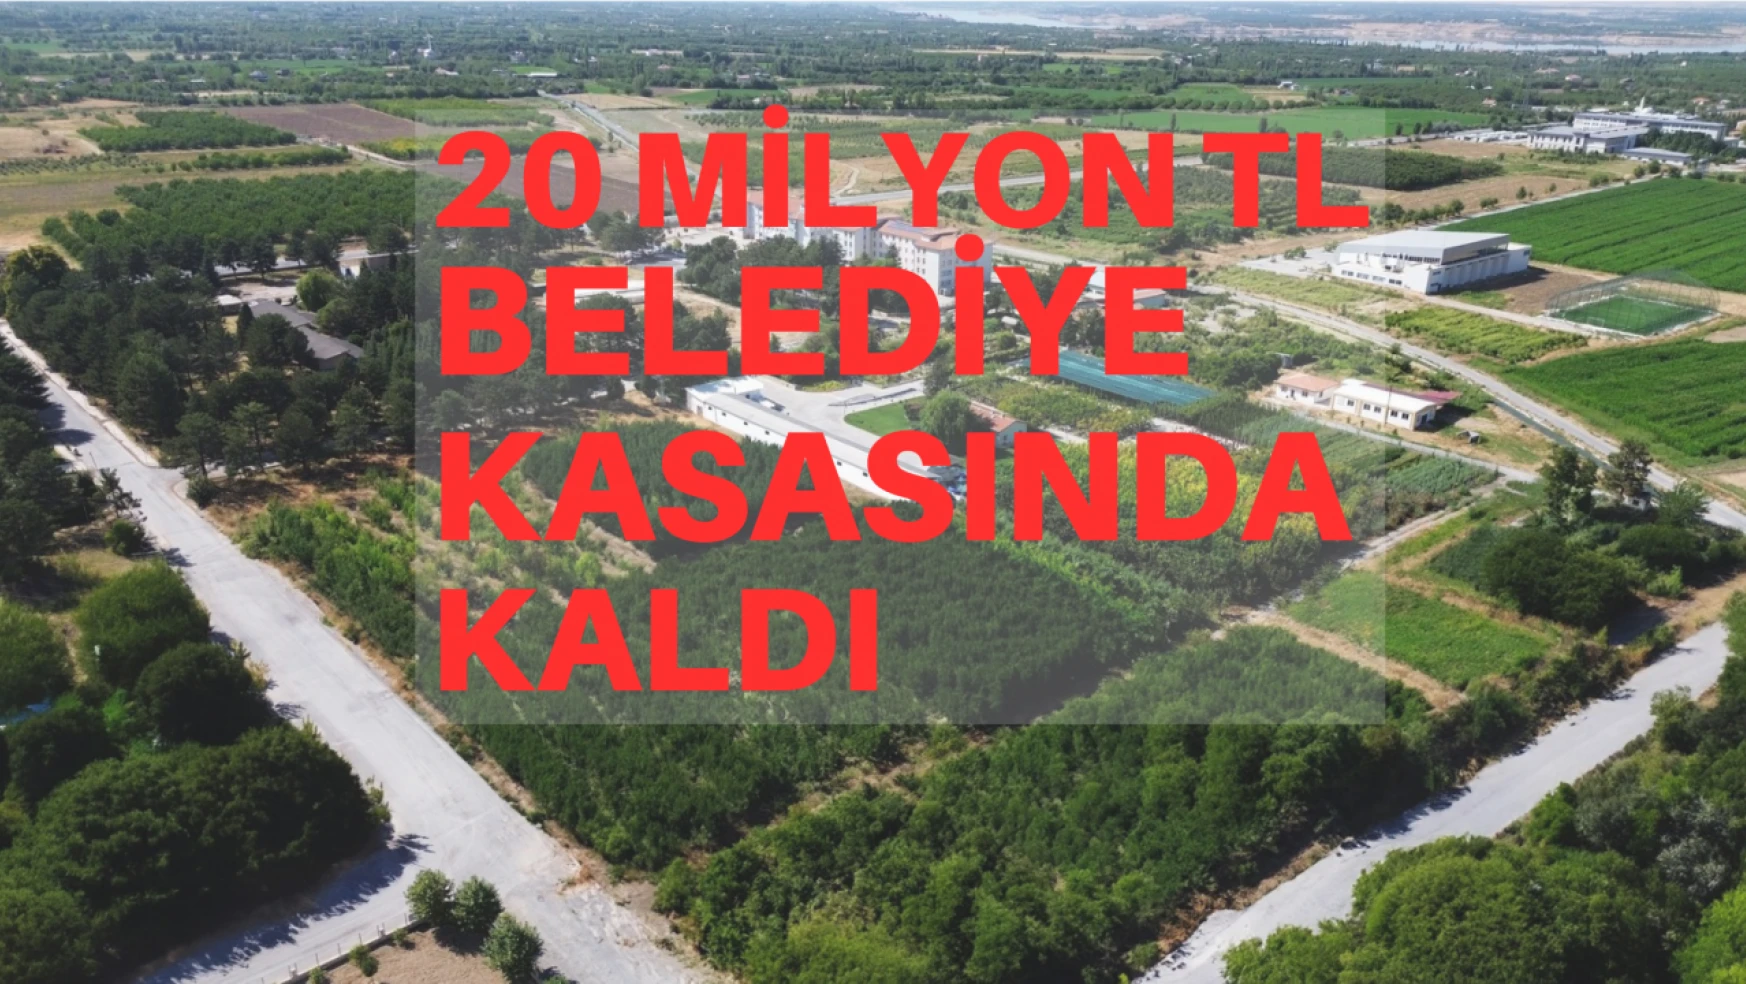 20 Milyon TL Belediye Kasasında Kaldı